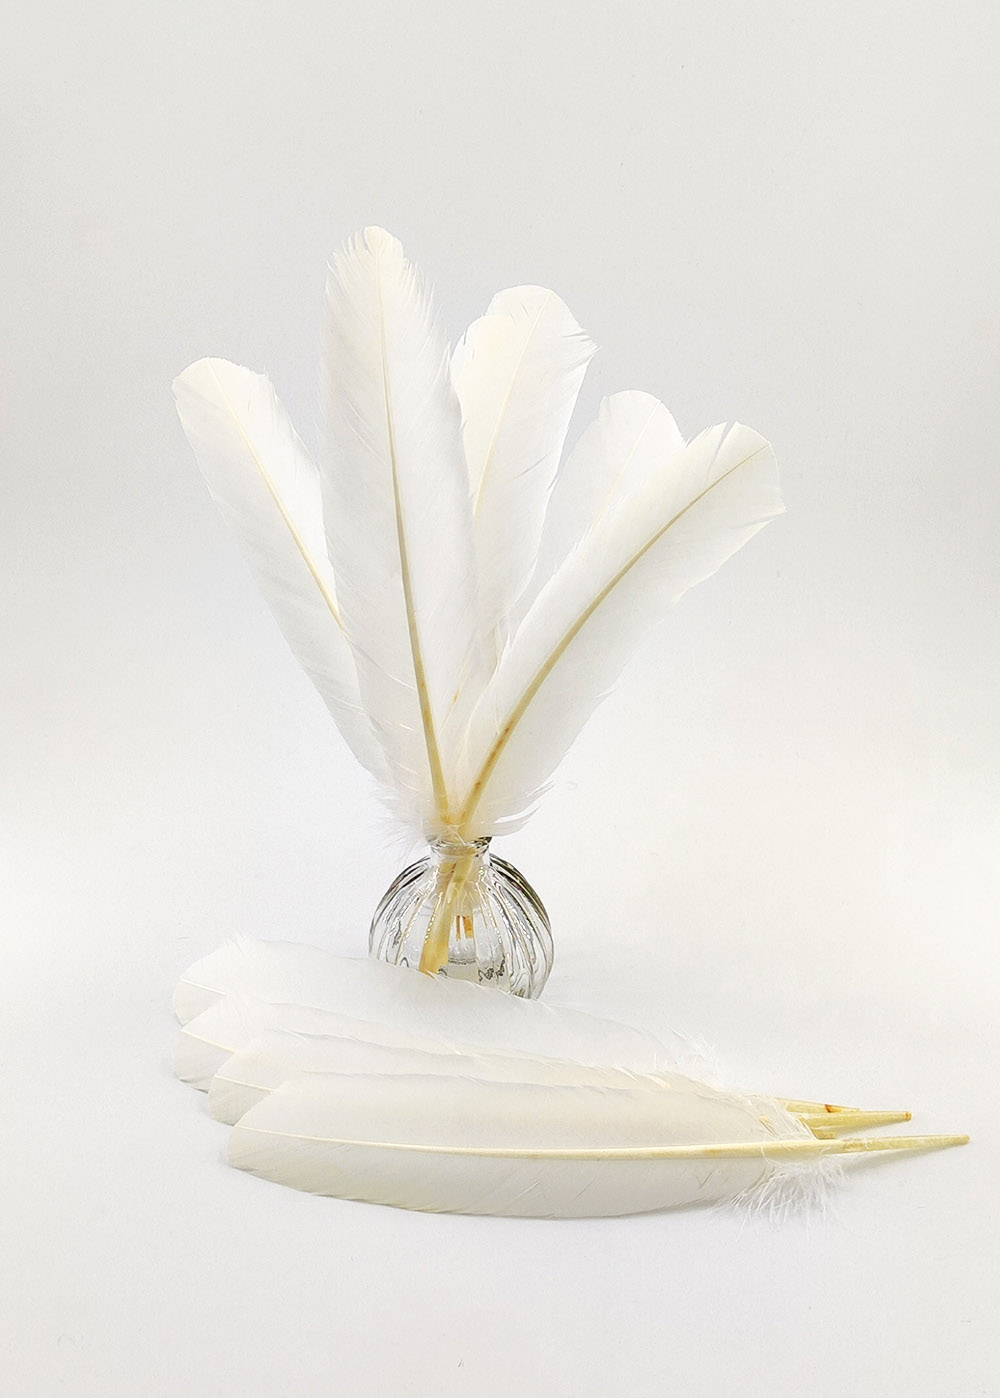 Plume palette de dinde - 5 pcs - teintes blanc, ivoire